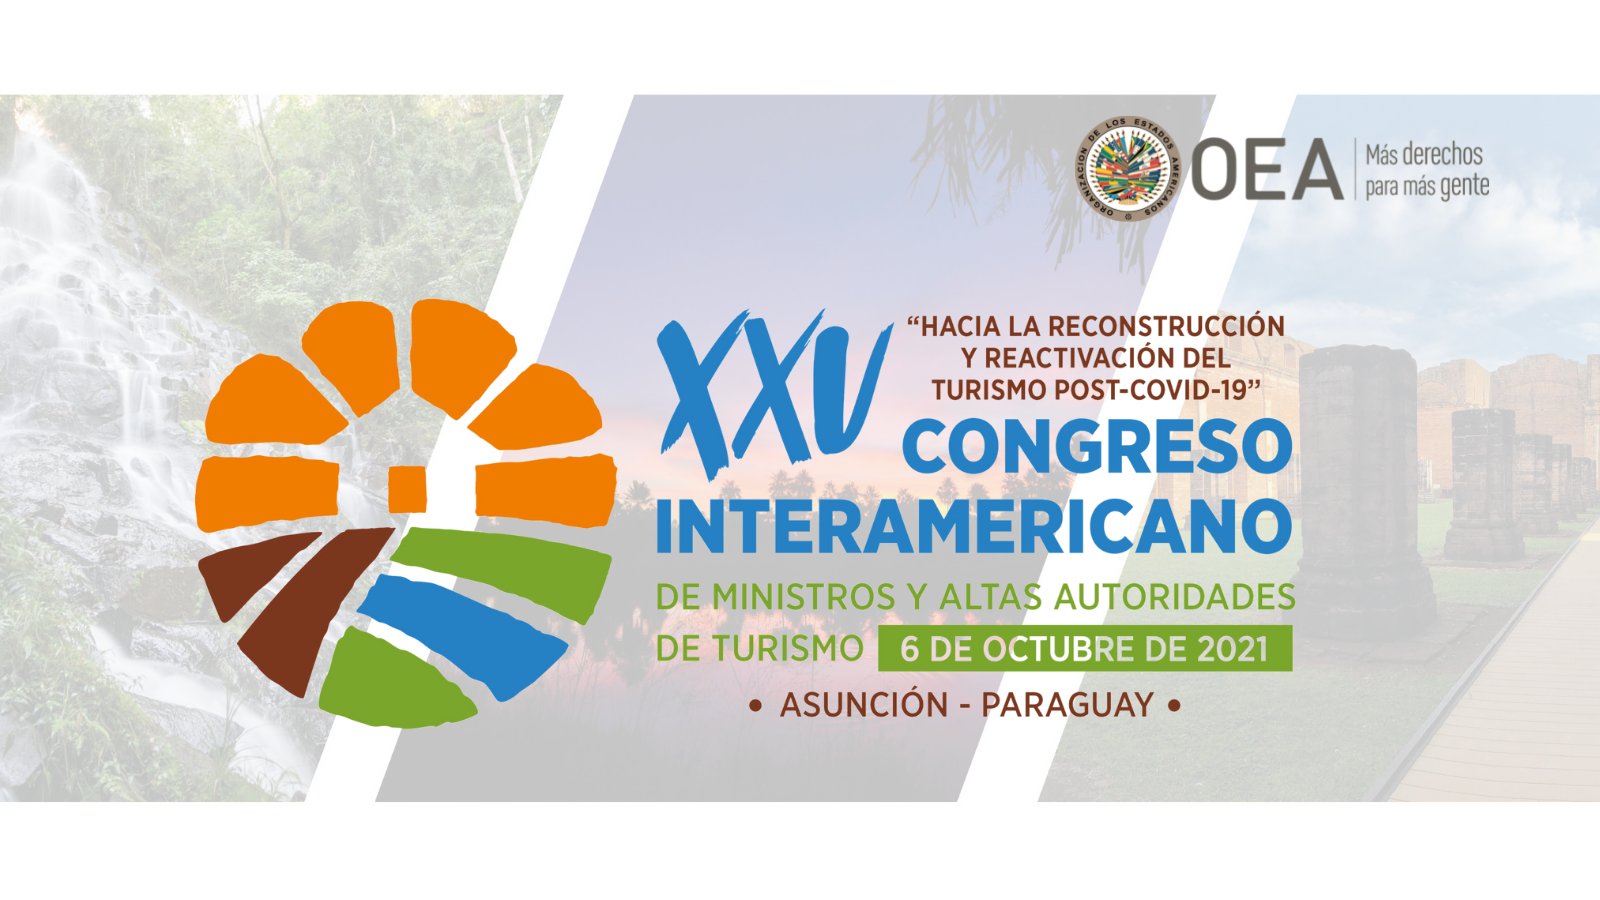 ISTO Américas participa en el XXV Congreso Interamericano de Ministros y Altas Autoridades de Turismo